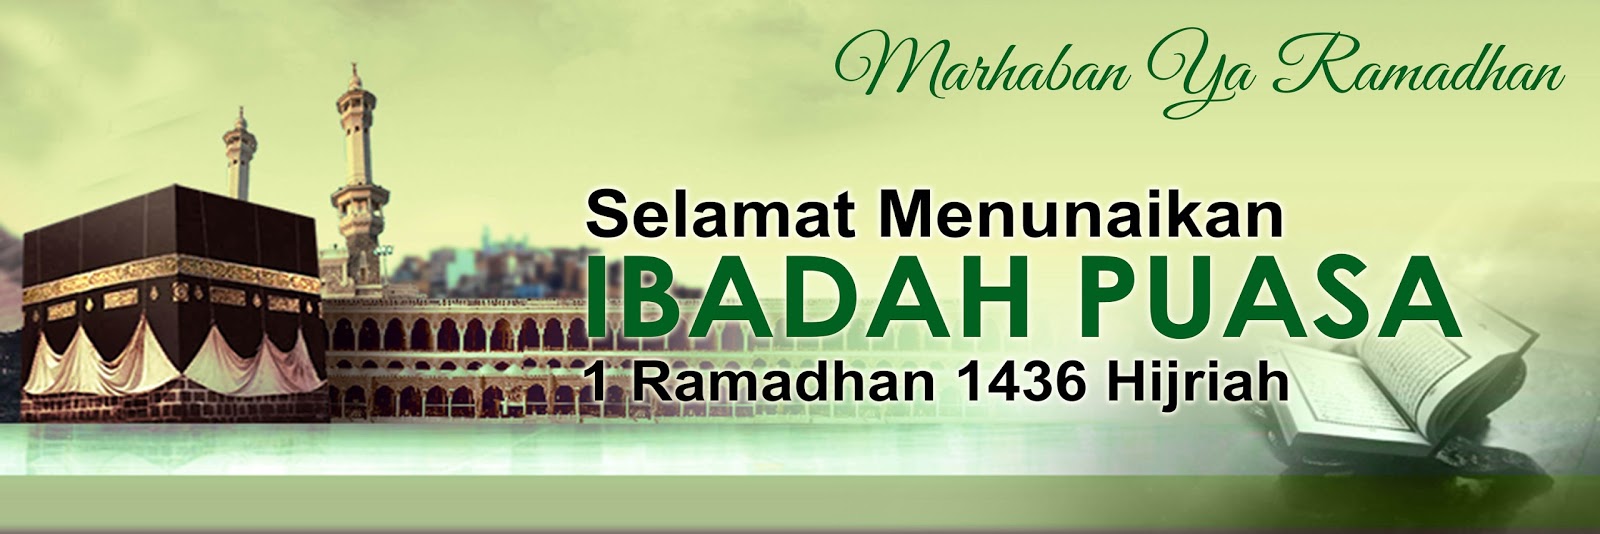 Contoh Banner Ramadhan Cdr #9 - Contoh O